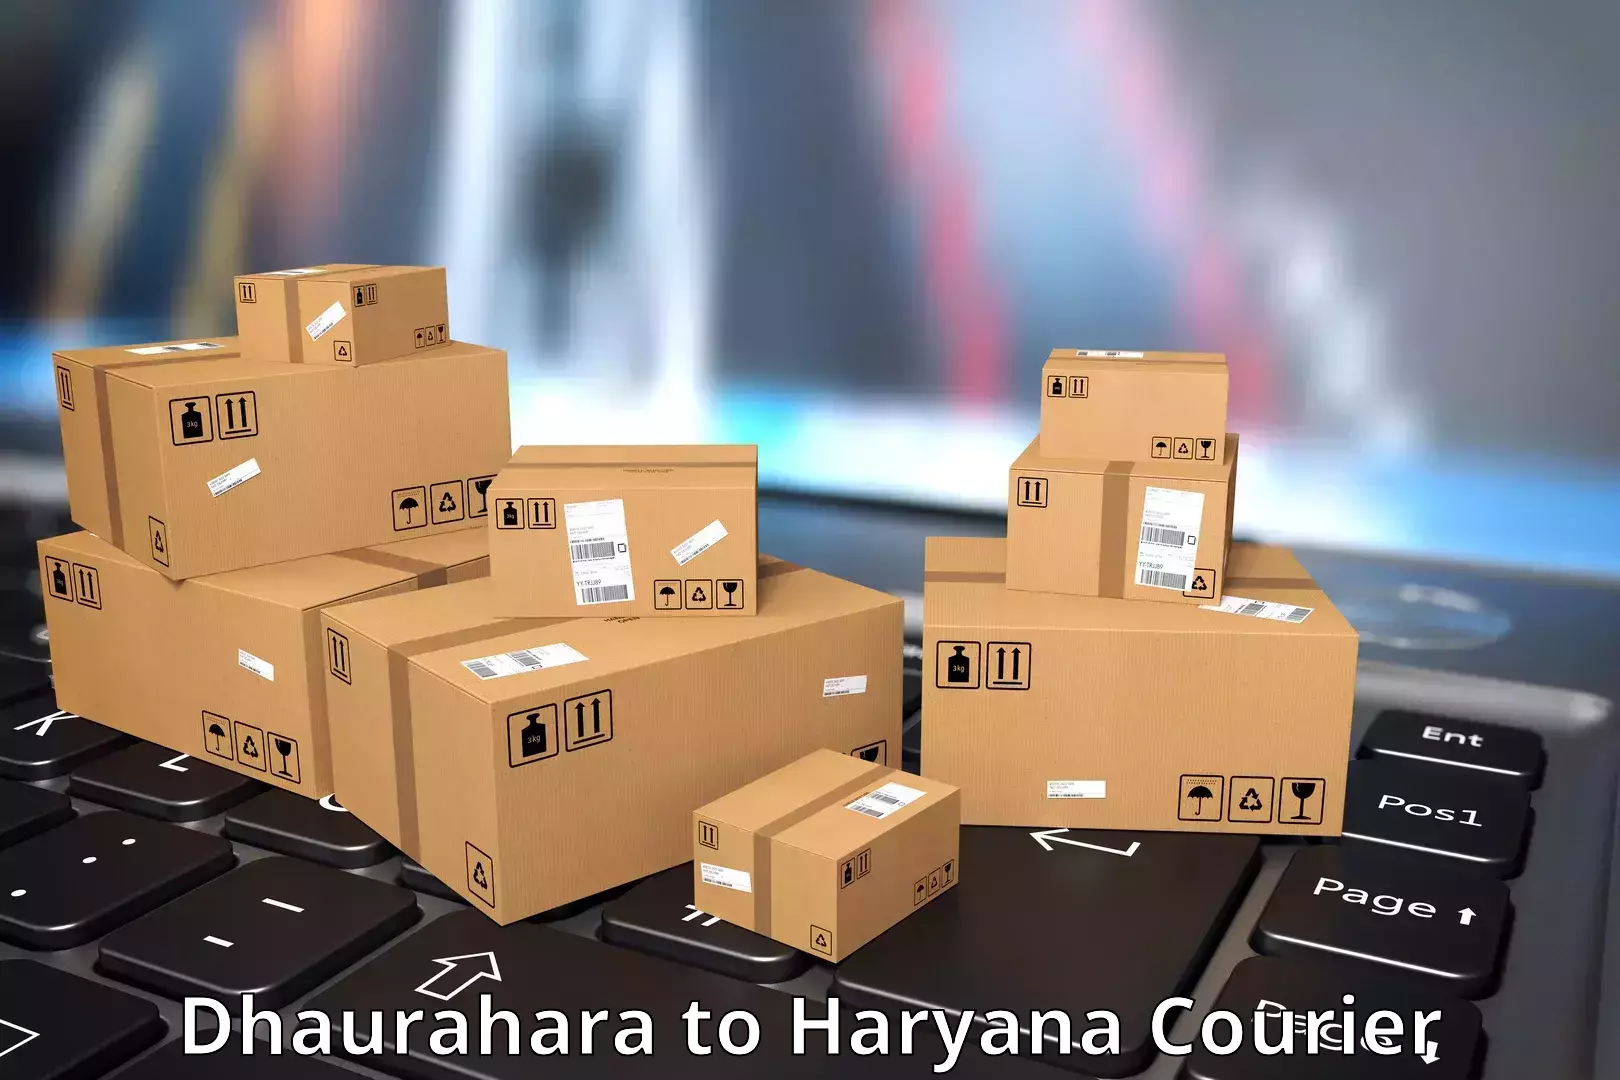 24/7 courier service Dhaurahara to Bahadurgarh